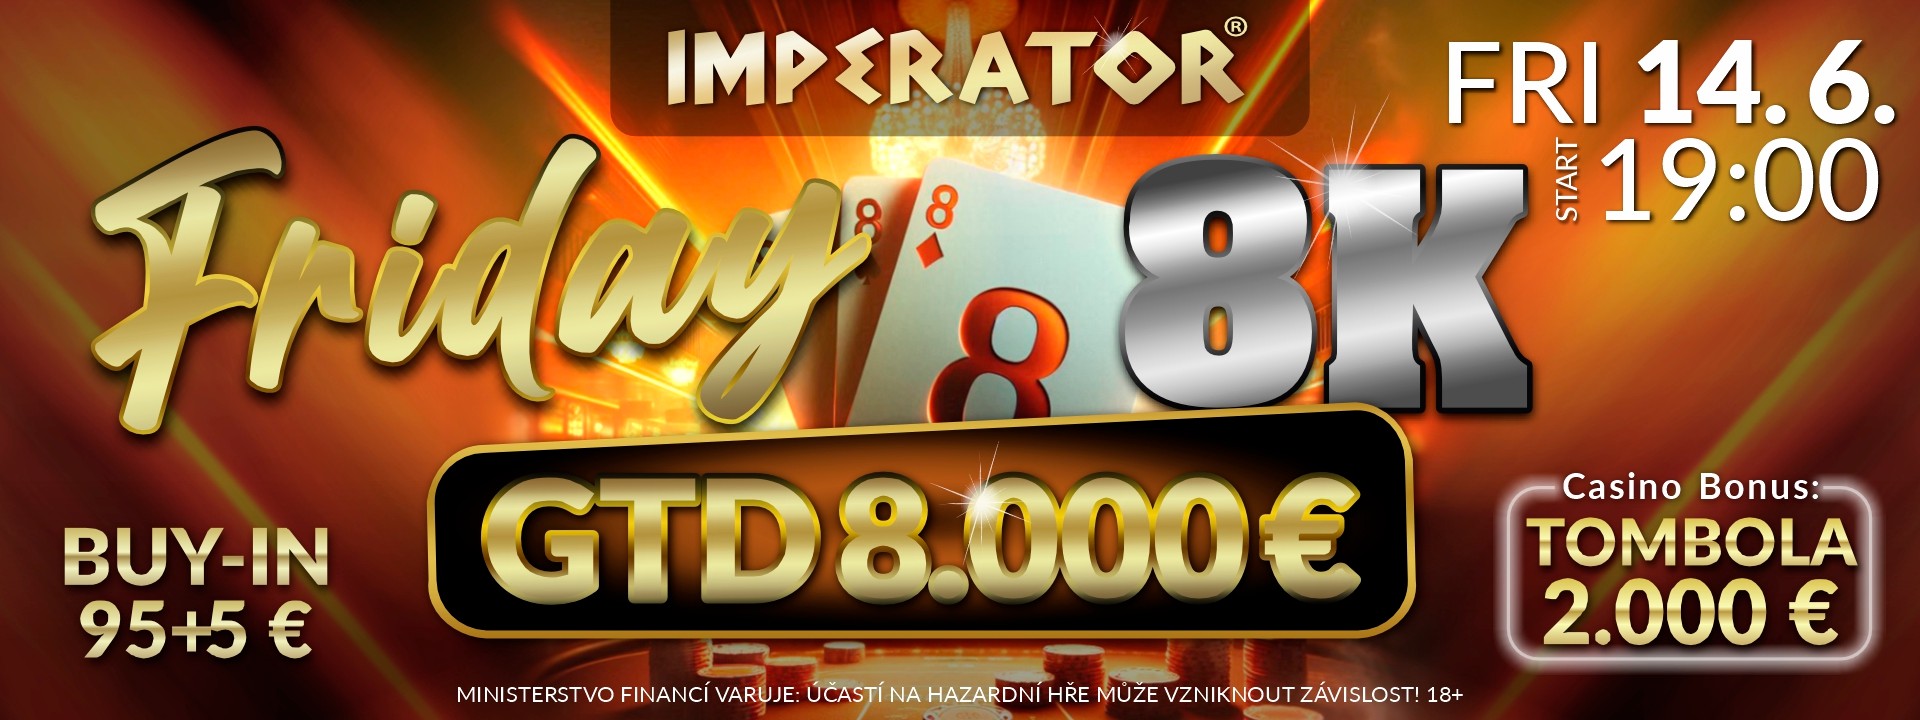 Friday 8K classic Casino Imperator